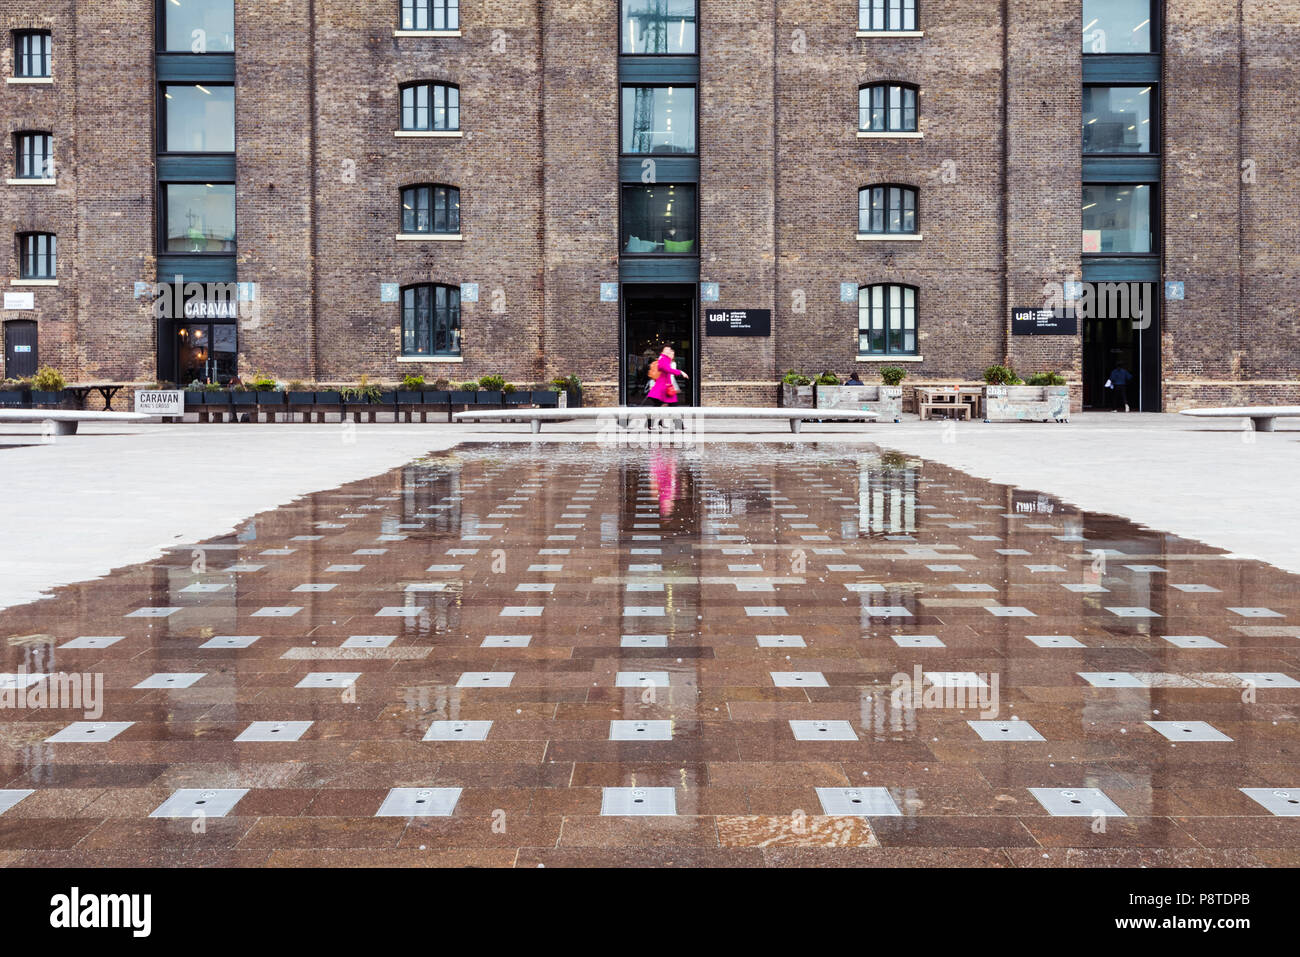 L'angle de tir faible de l'Université des Arts de Londres (UAL) dans le grenier Square, King's Cross, montrant une femme dans un manteau rose placé au centre, Banque D'Images